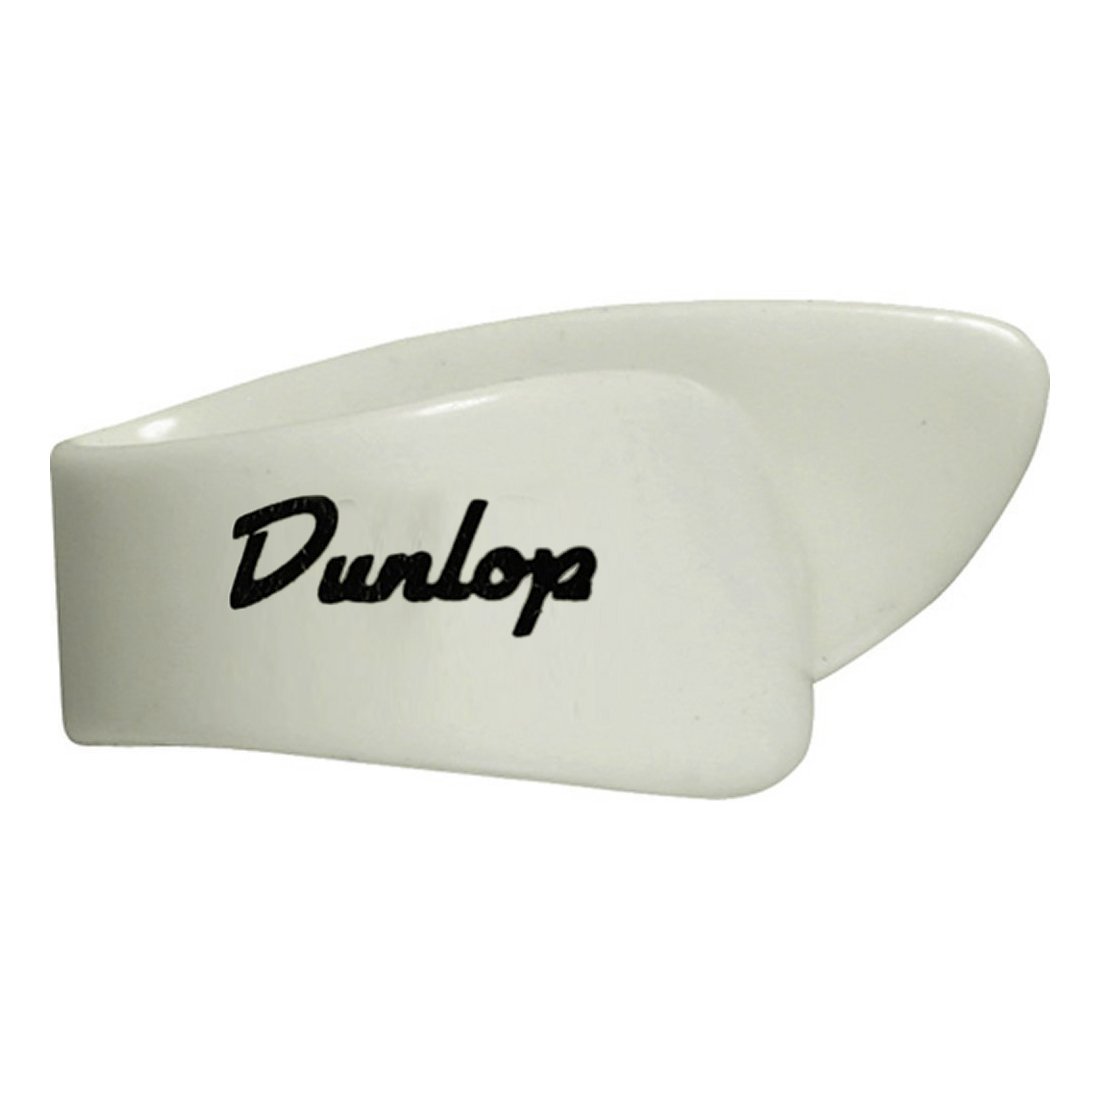 Dunlop - Onglet blanc - 9012 M